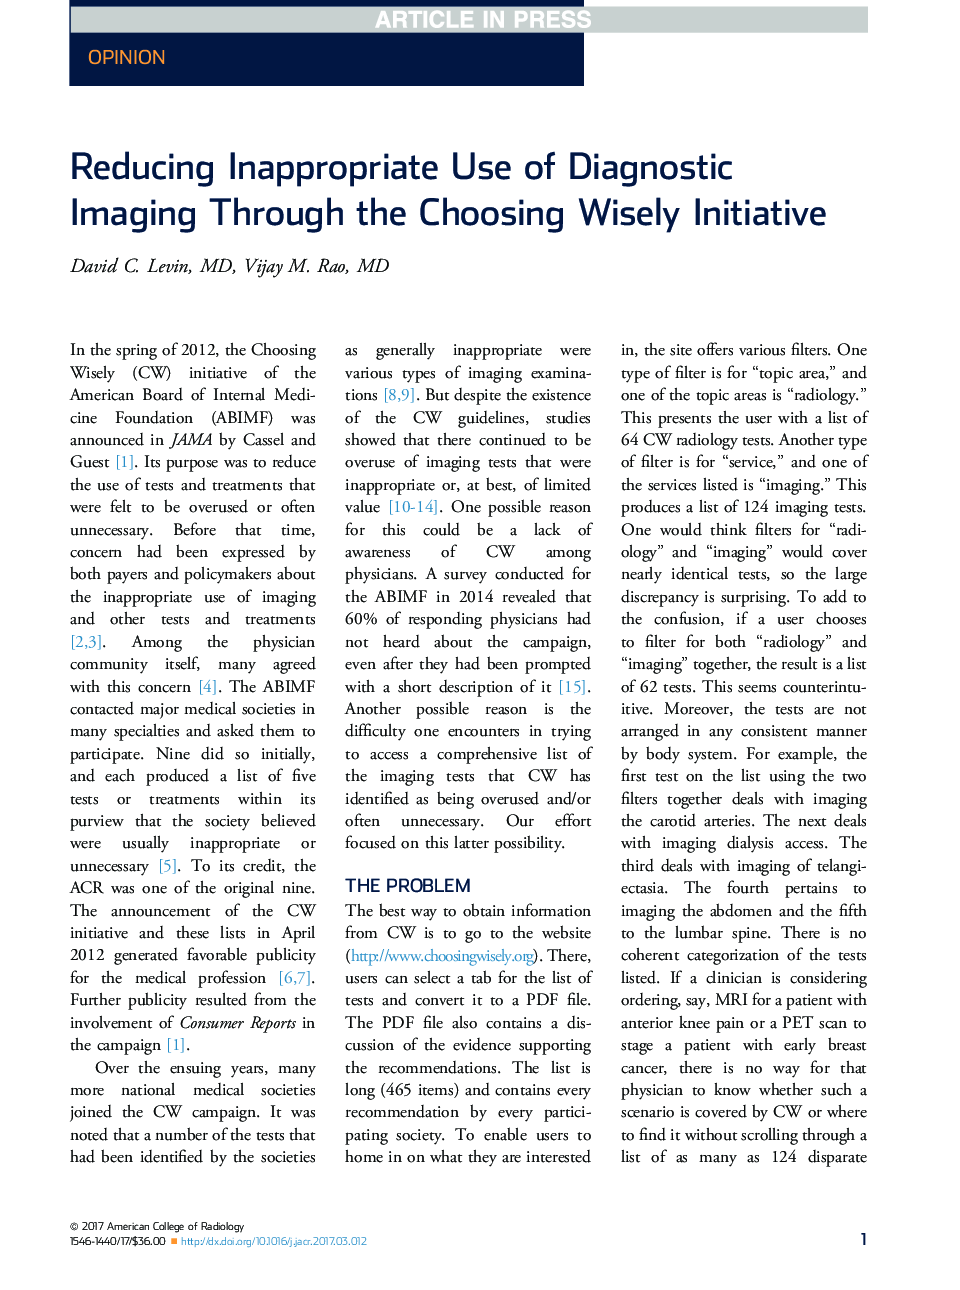 کاهش استفاده نامناسب از تصویربرداری تشخیصی از طریق انتخاب عاقلانه 